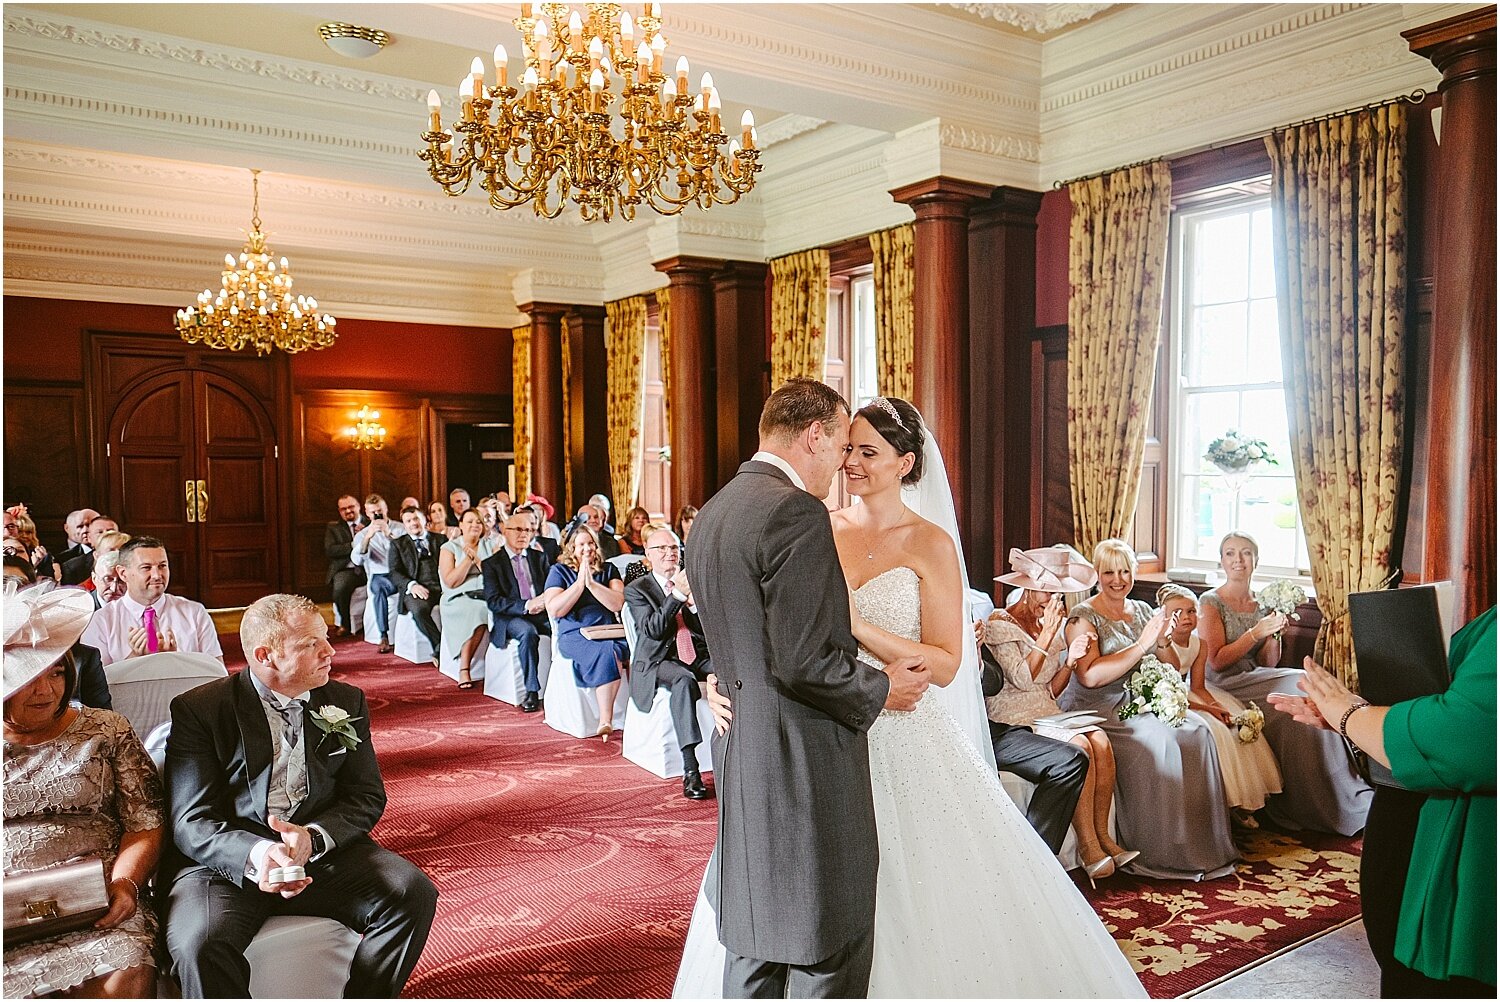 Doxford Hall wedding 036.jpg